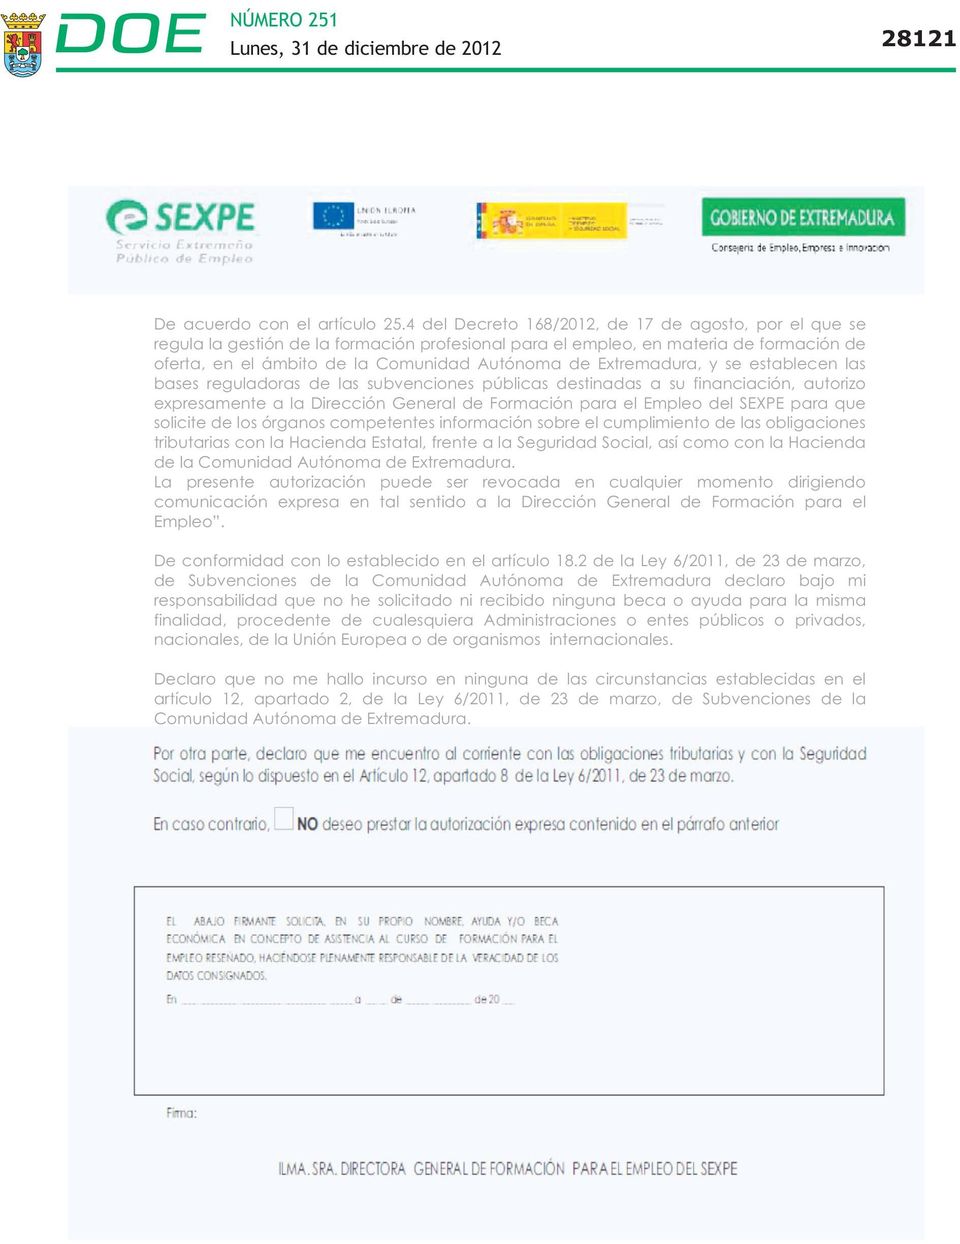 Extremadura, y se establecen las bases reguladoras de las subvenciones públicas destinadas a su financiación, autorizo expresamente a la Dirección General de Formación para el Empleo del SEXPE para